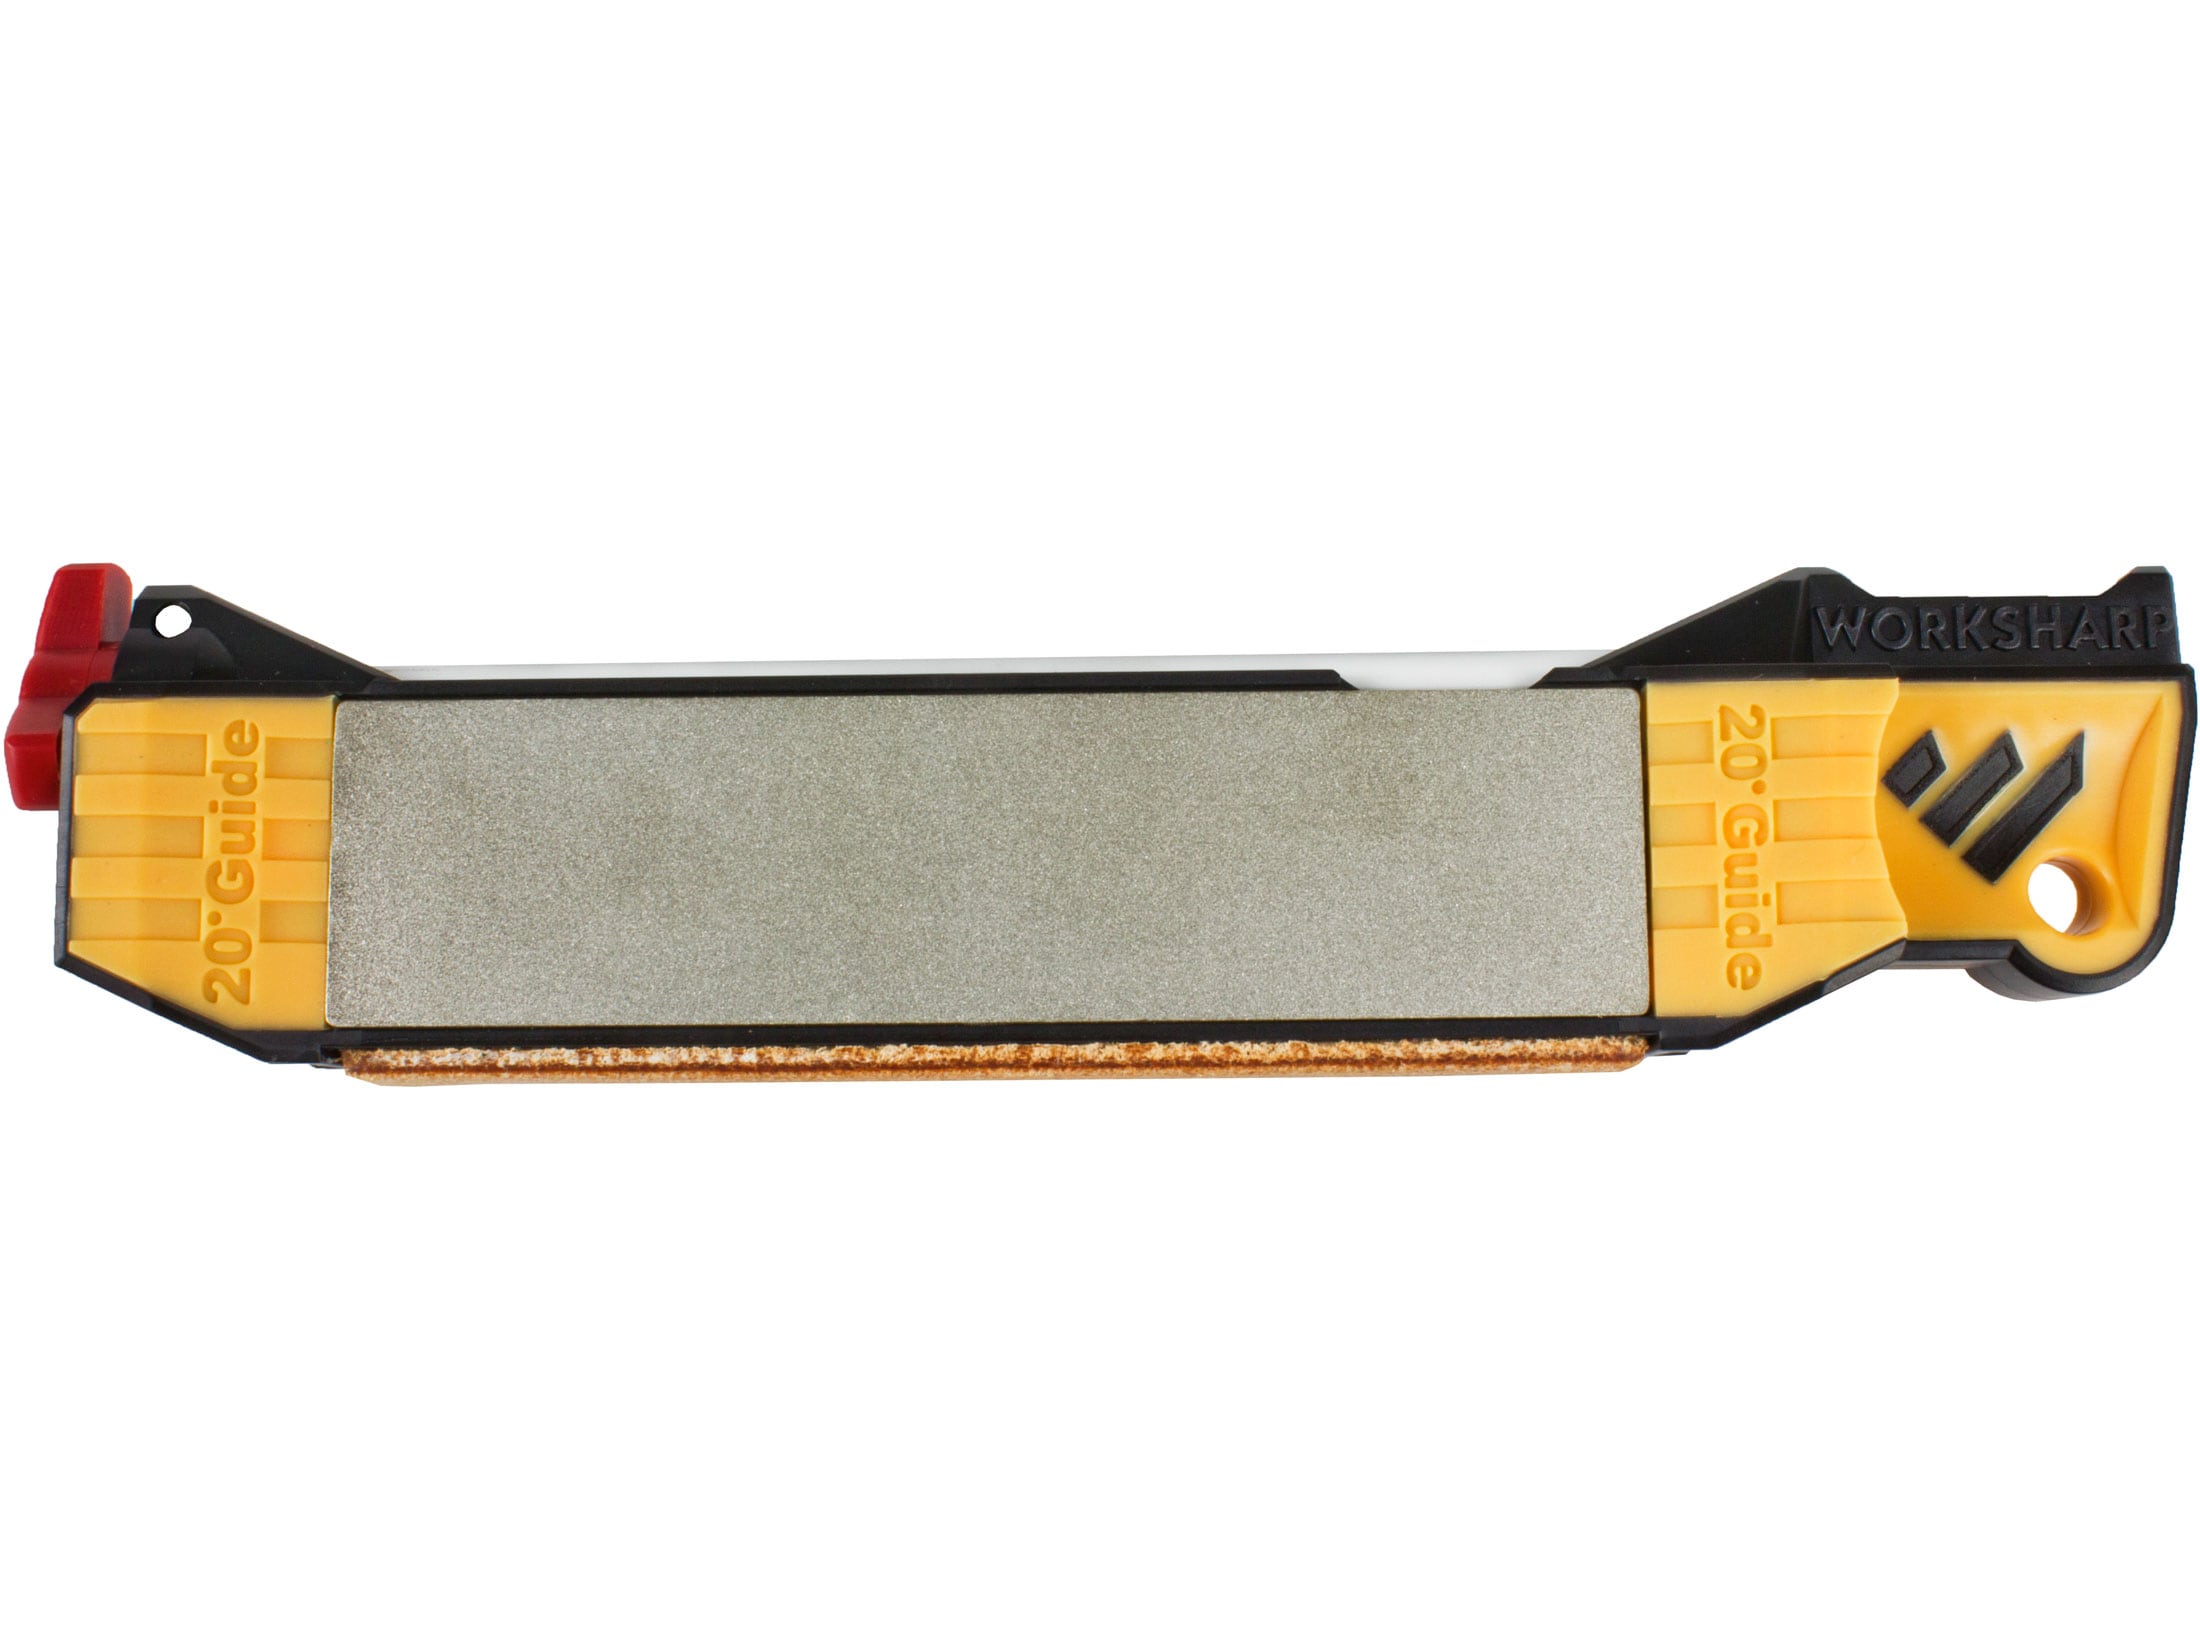 Work Sharp Guided Field Knife Sharpener For Sale